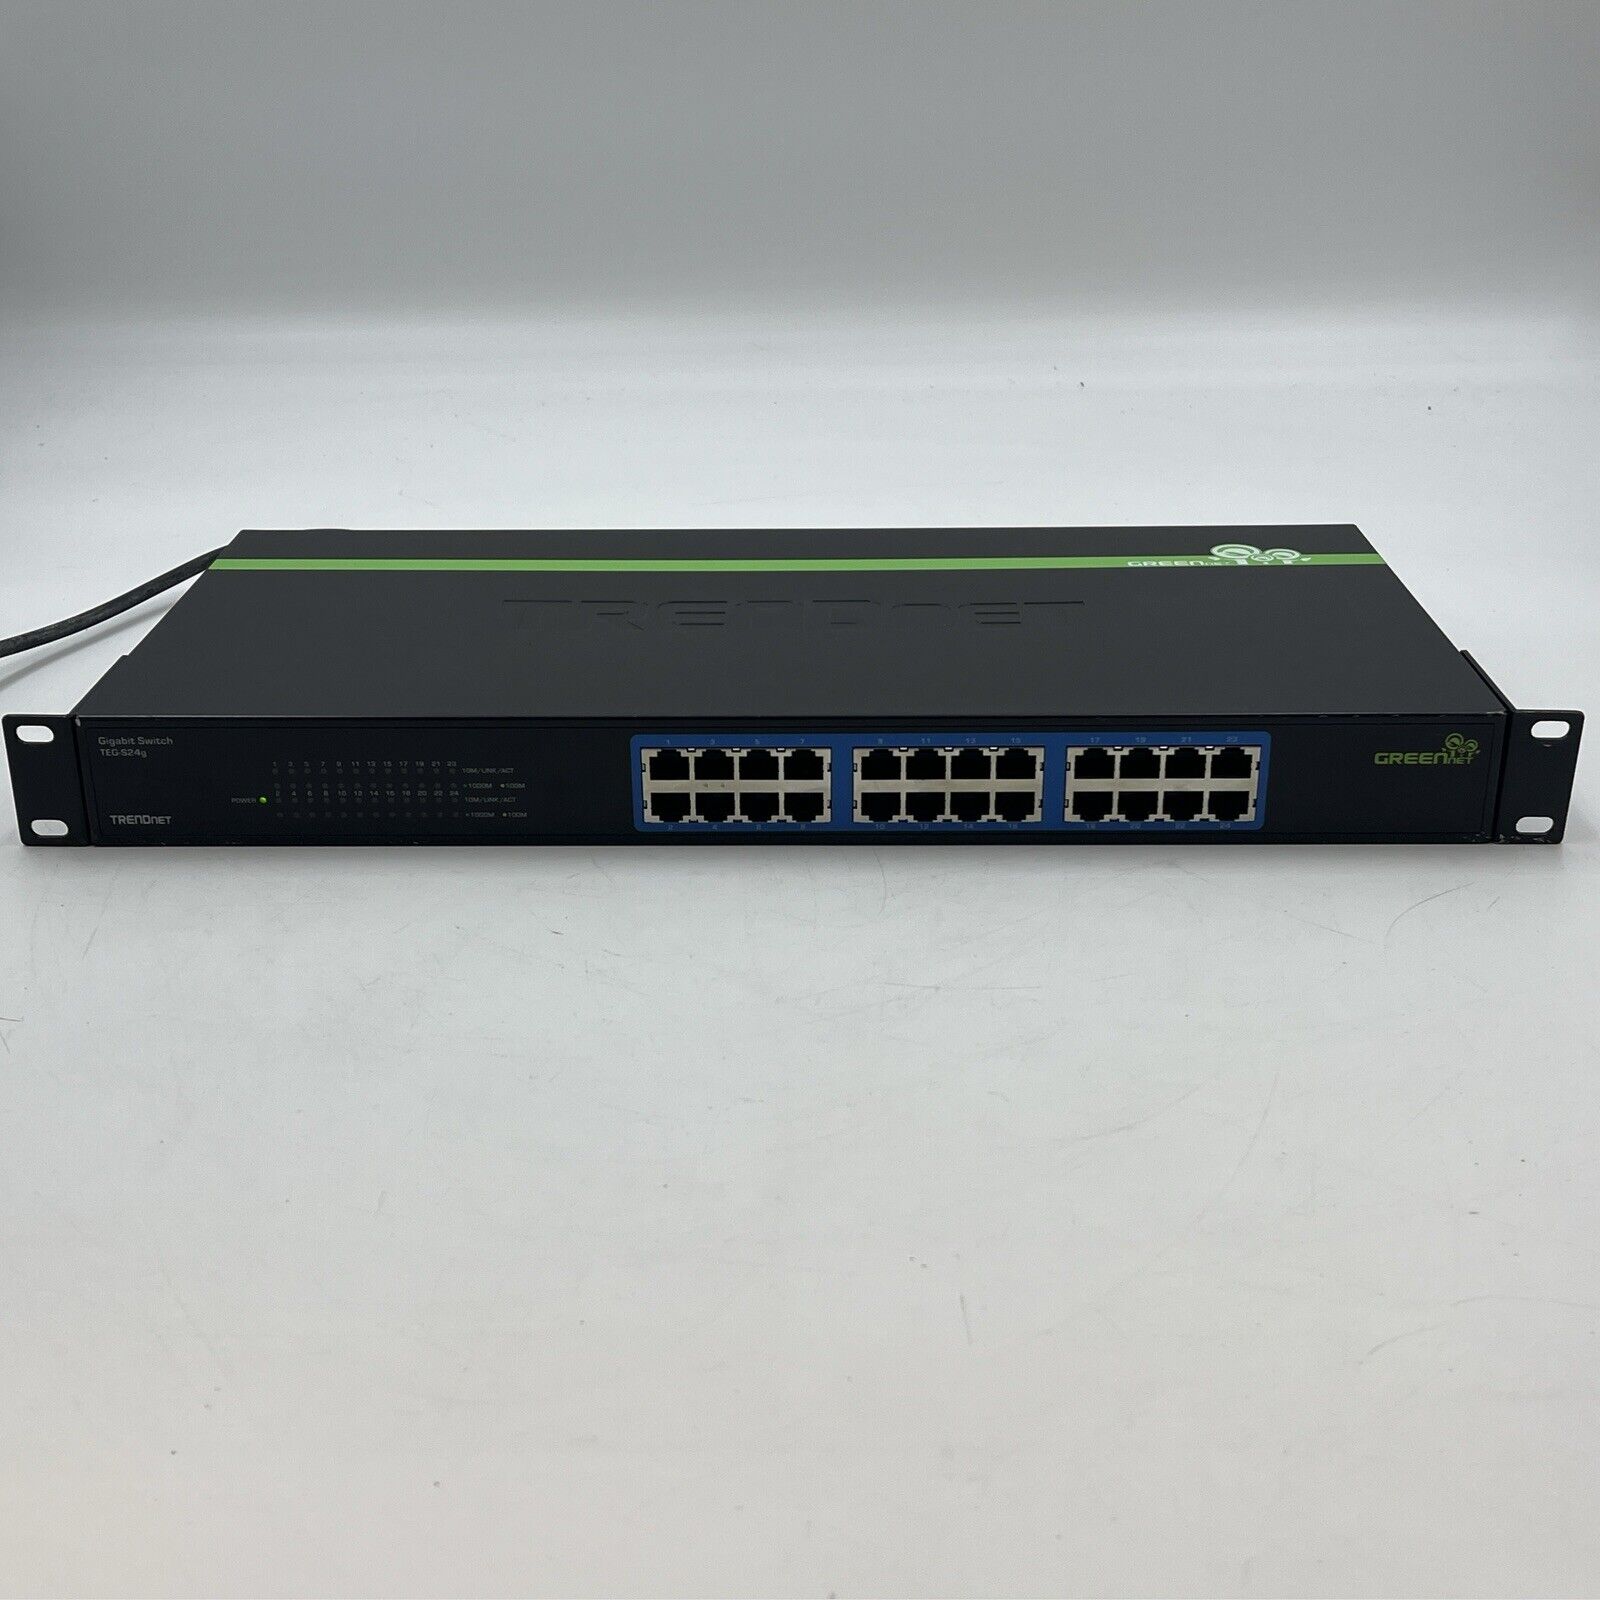 TRENDnet 24-Port Unmanaged Gigabit 10/100/1000 Mbps GREENnet Ethernet Switch